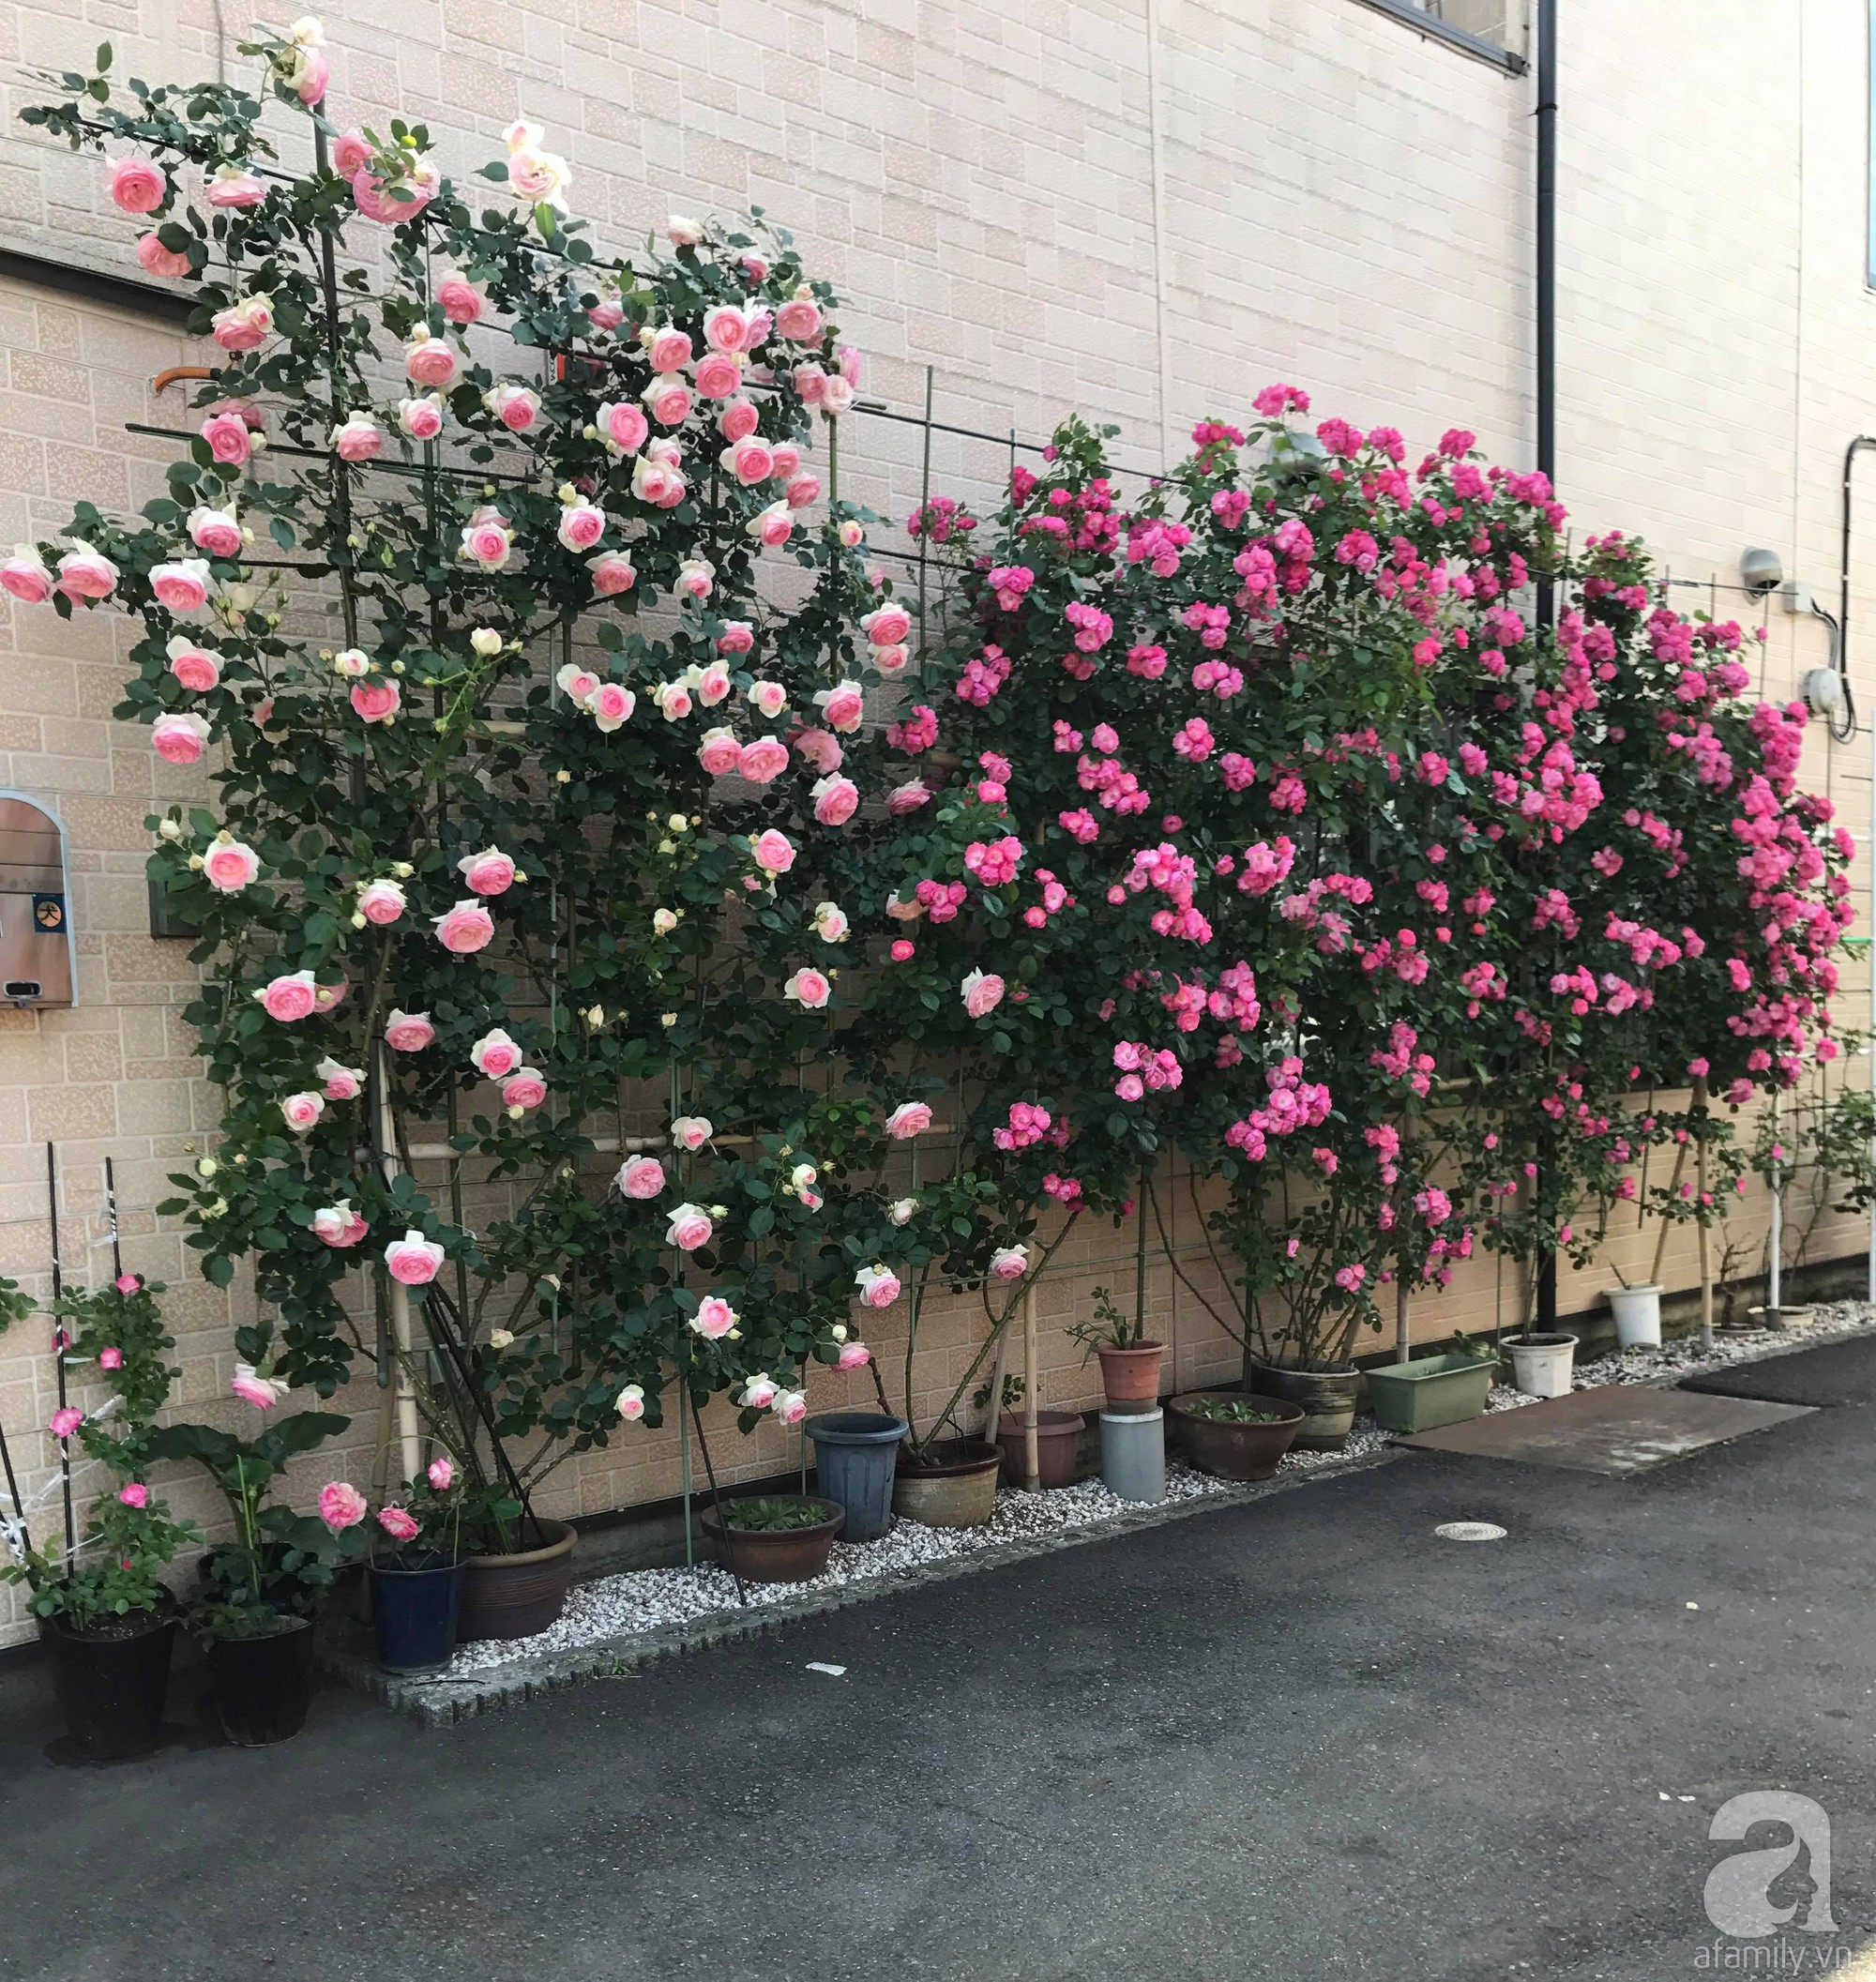 Bức tường hoa hồng đẹp như mơ trong sân vườn vỏn vẹn 6m² của người phụ nữ bỏ ra 5 năm miệt mài chăm sóc - Ảnh 22.